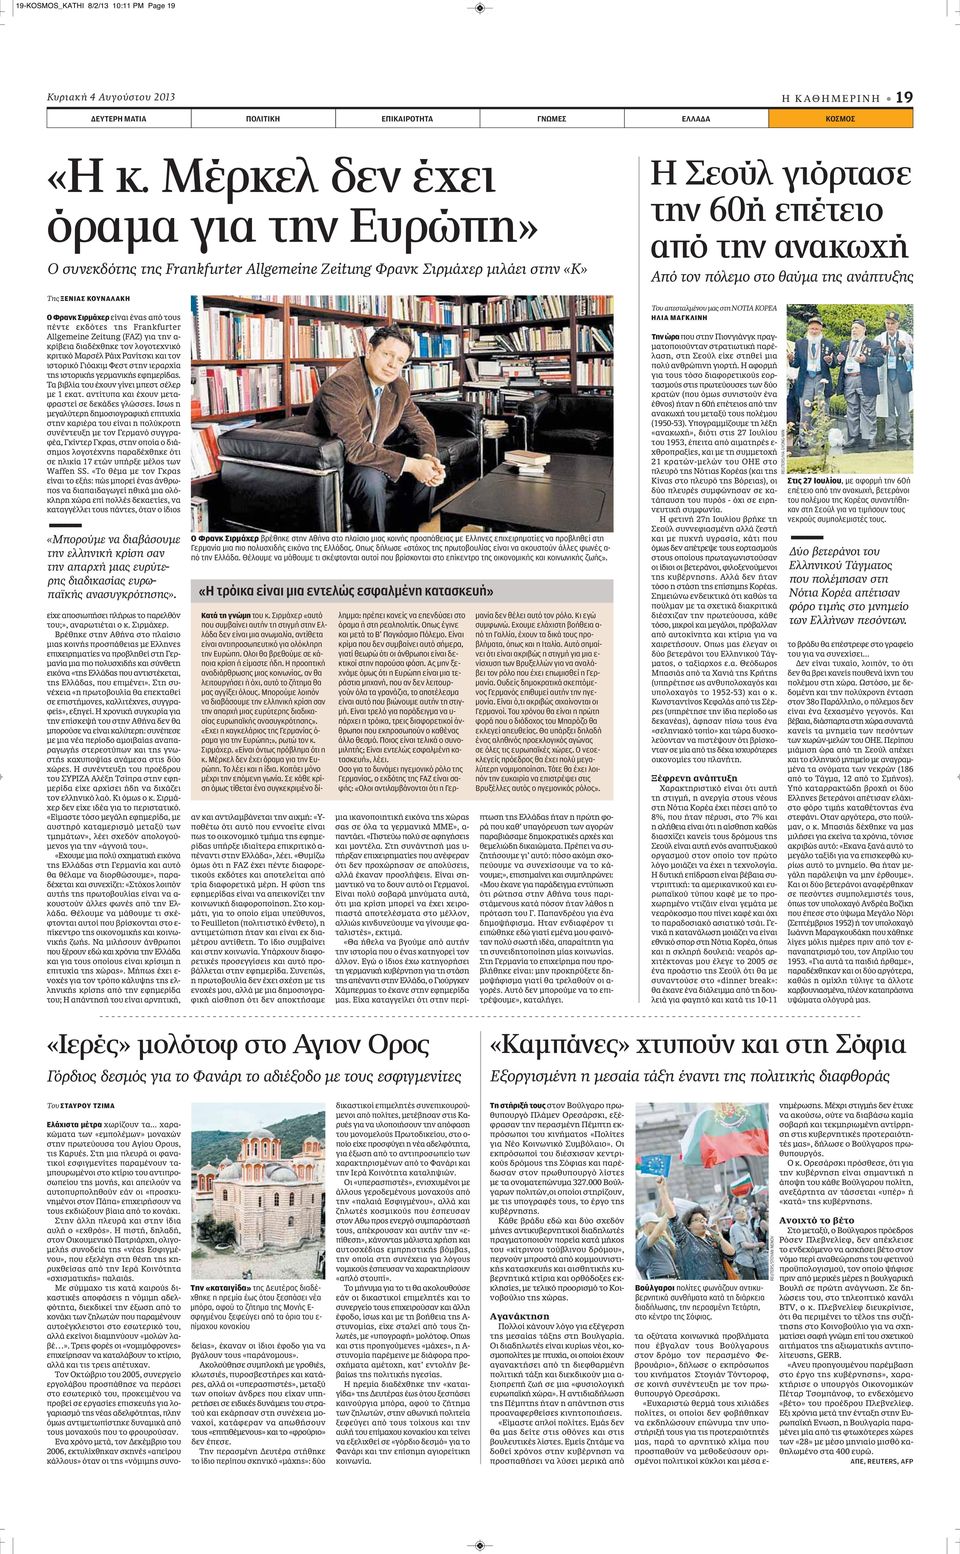 Frankfurter Allgemeine Zeitung (FAZ) για την α- κρίβεια διαδέχθηκε τον λογοτεχνικό κριτικό Μαρσέλ Ράιχ Ρανίτσκι και τον ιστορικό Γιόακιμ Φεστ στην ιεραρχία της ιστορικής γερμανικής εφημερίδας.